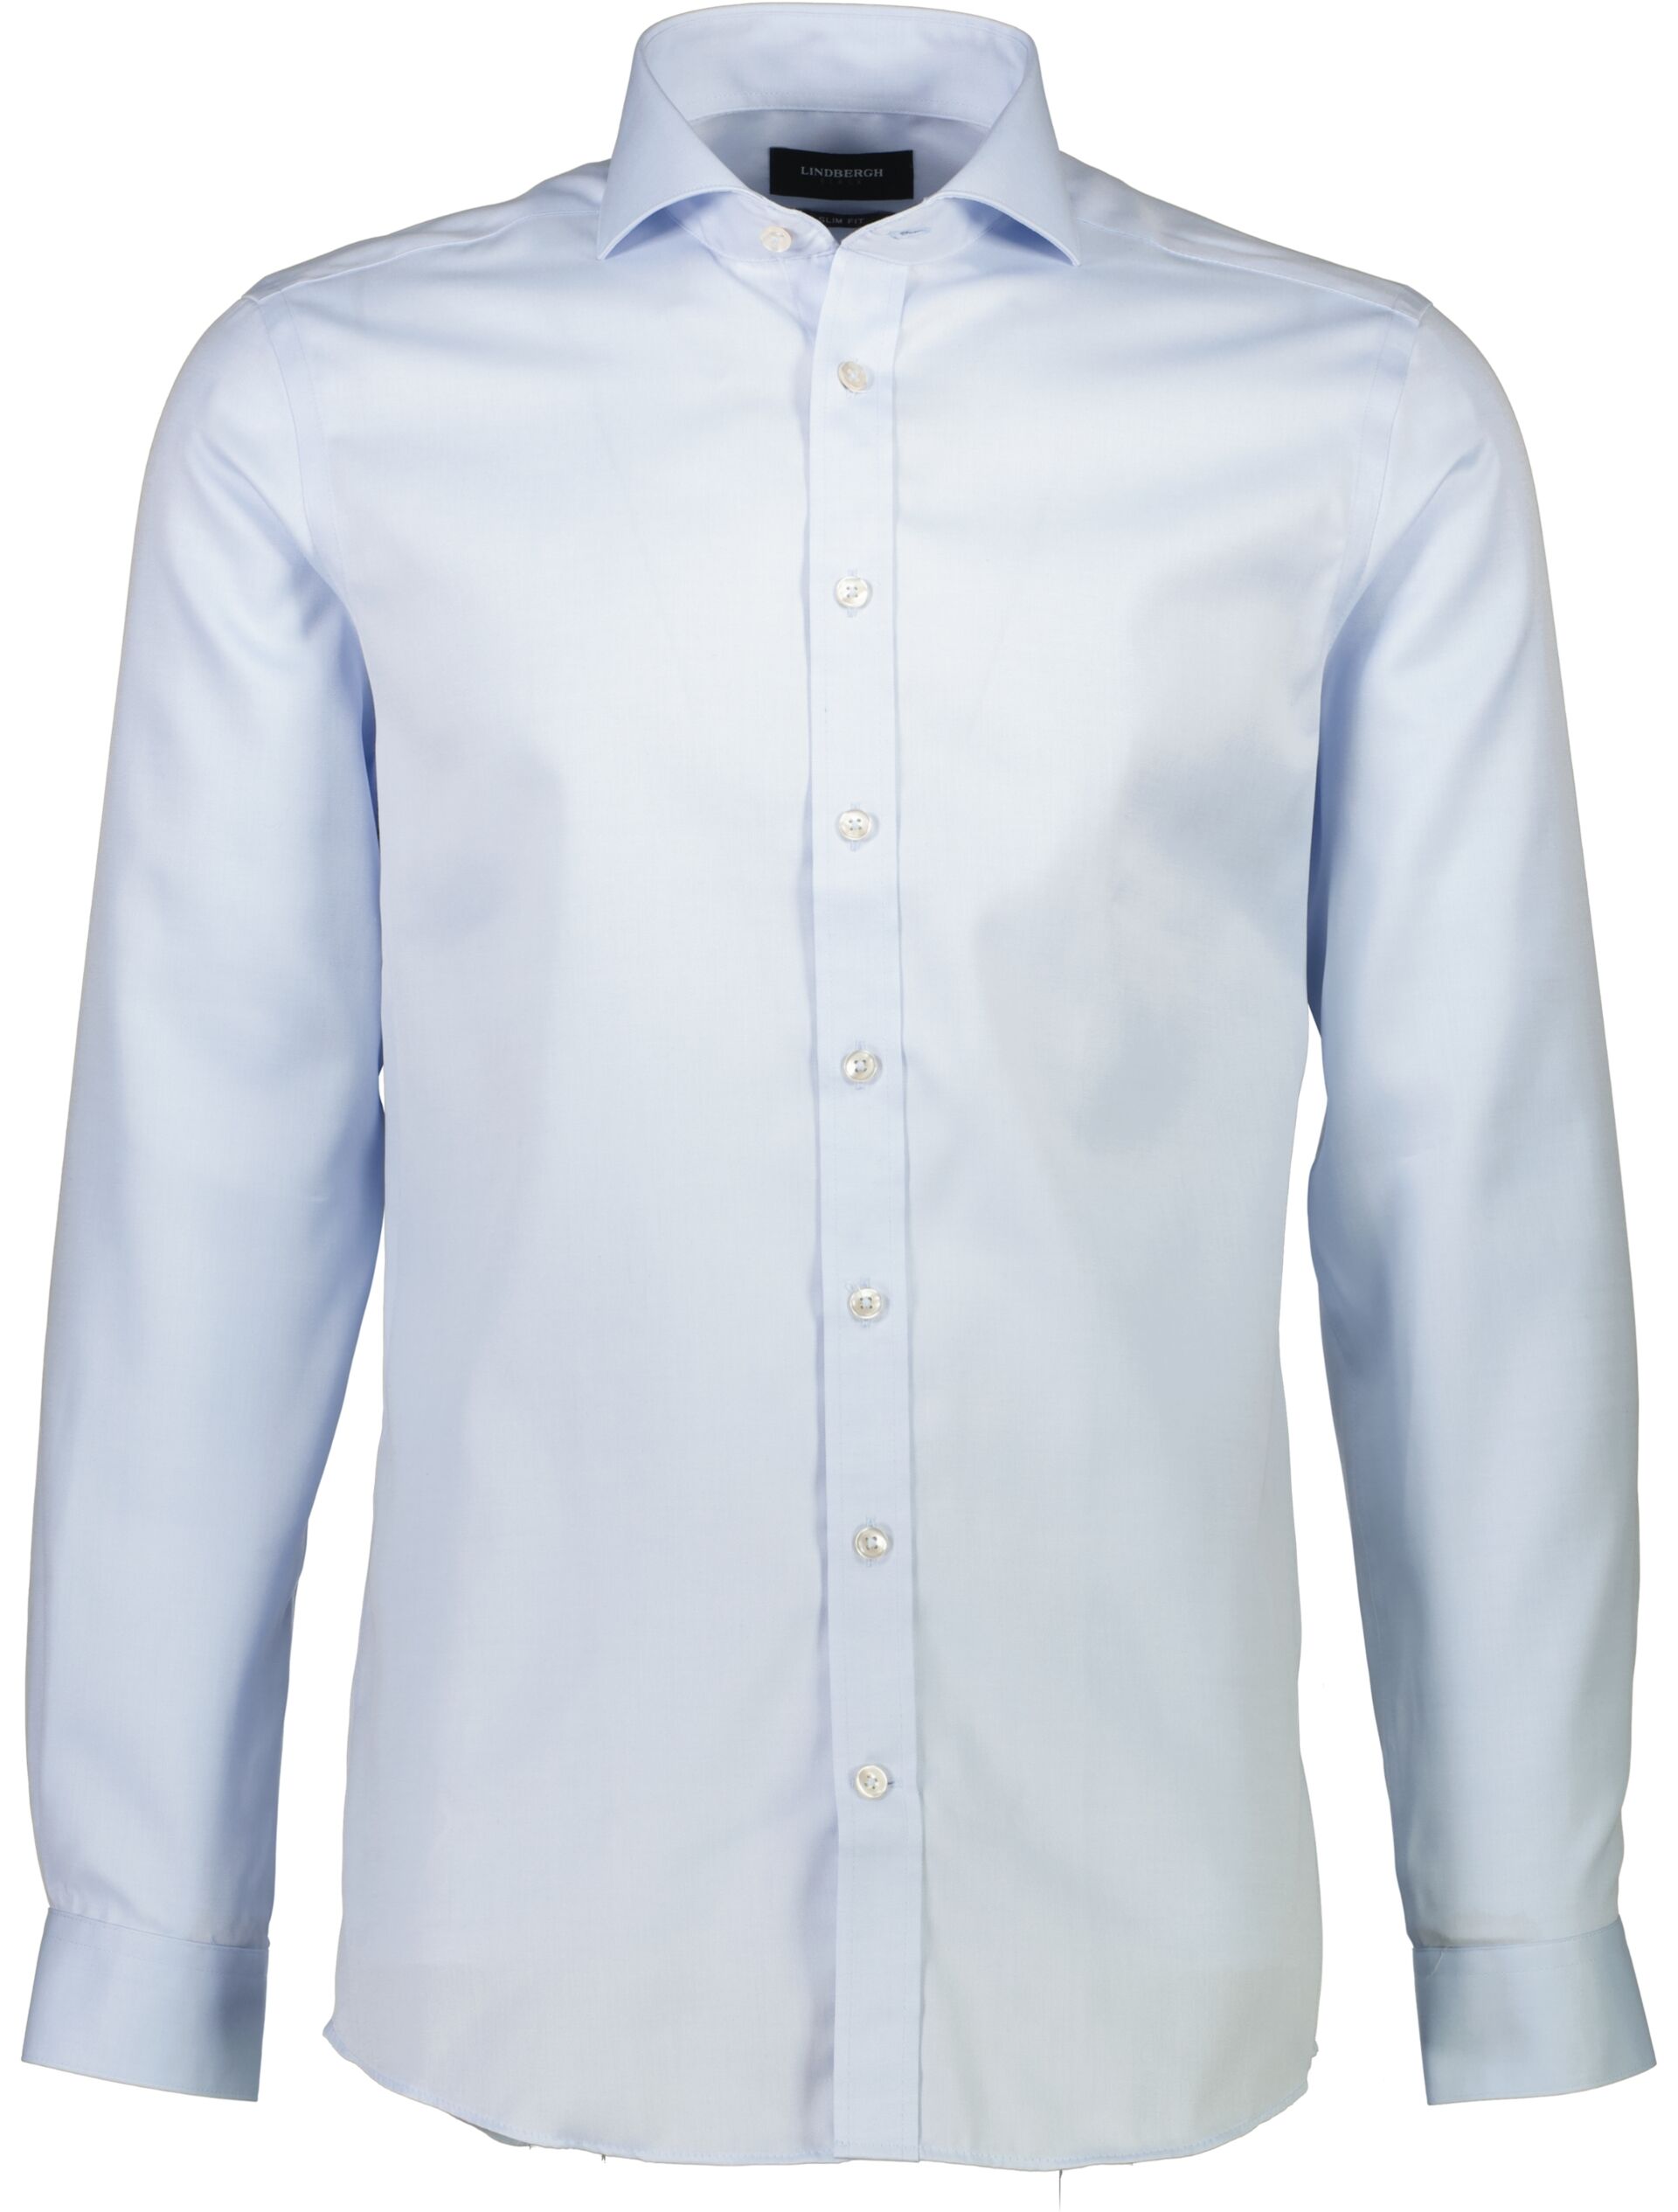 Business skjorte Business skjorte Blå 30-242130S